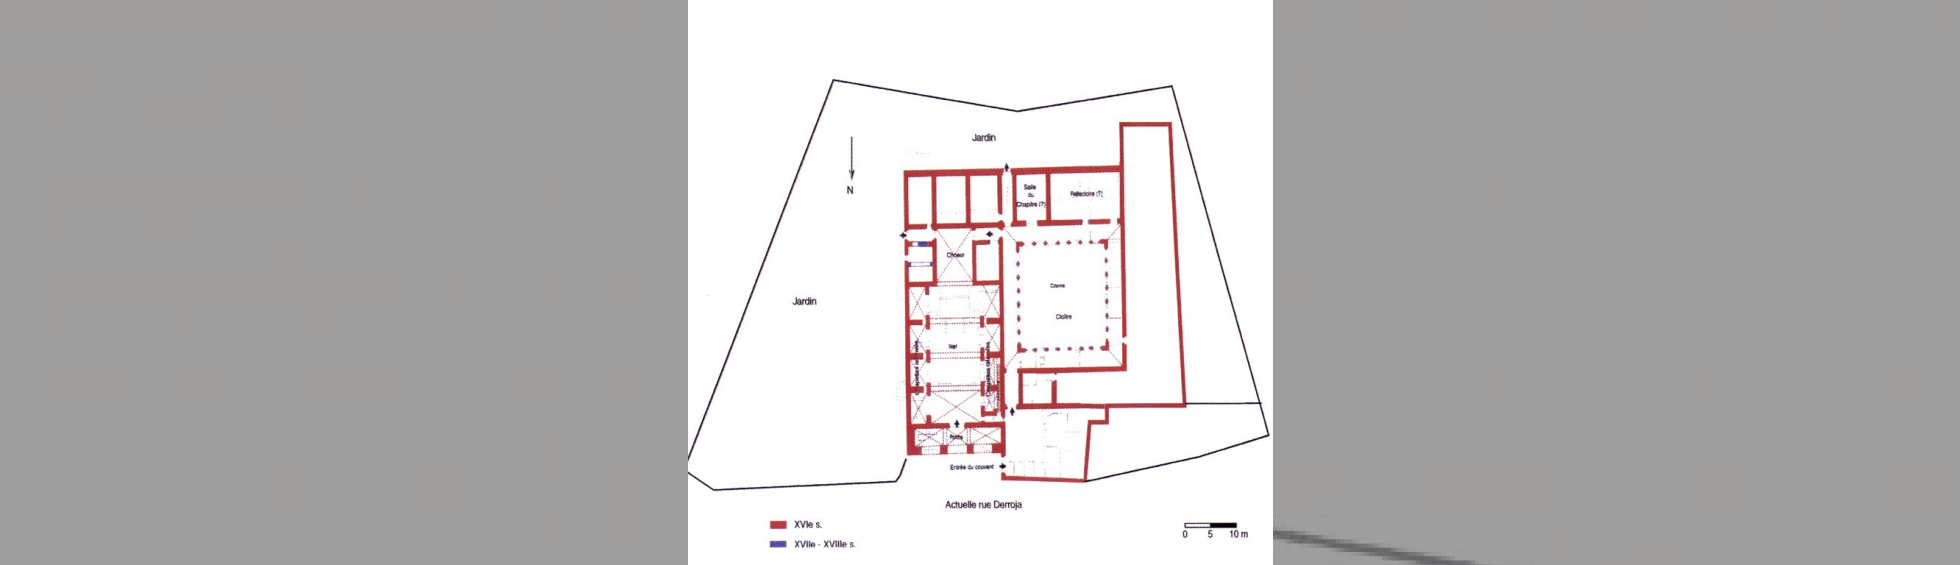 Plan  du couvent 17e siècle:église , cloitre,salle du chapitre et refectoire